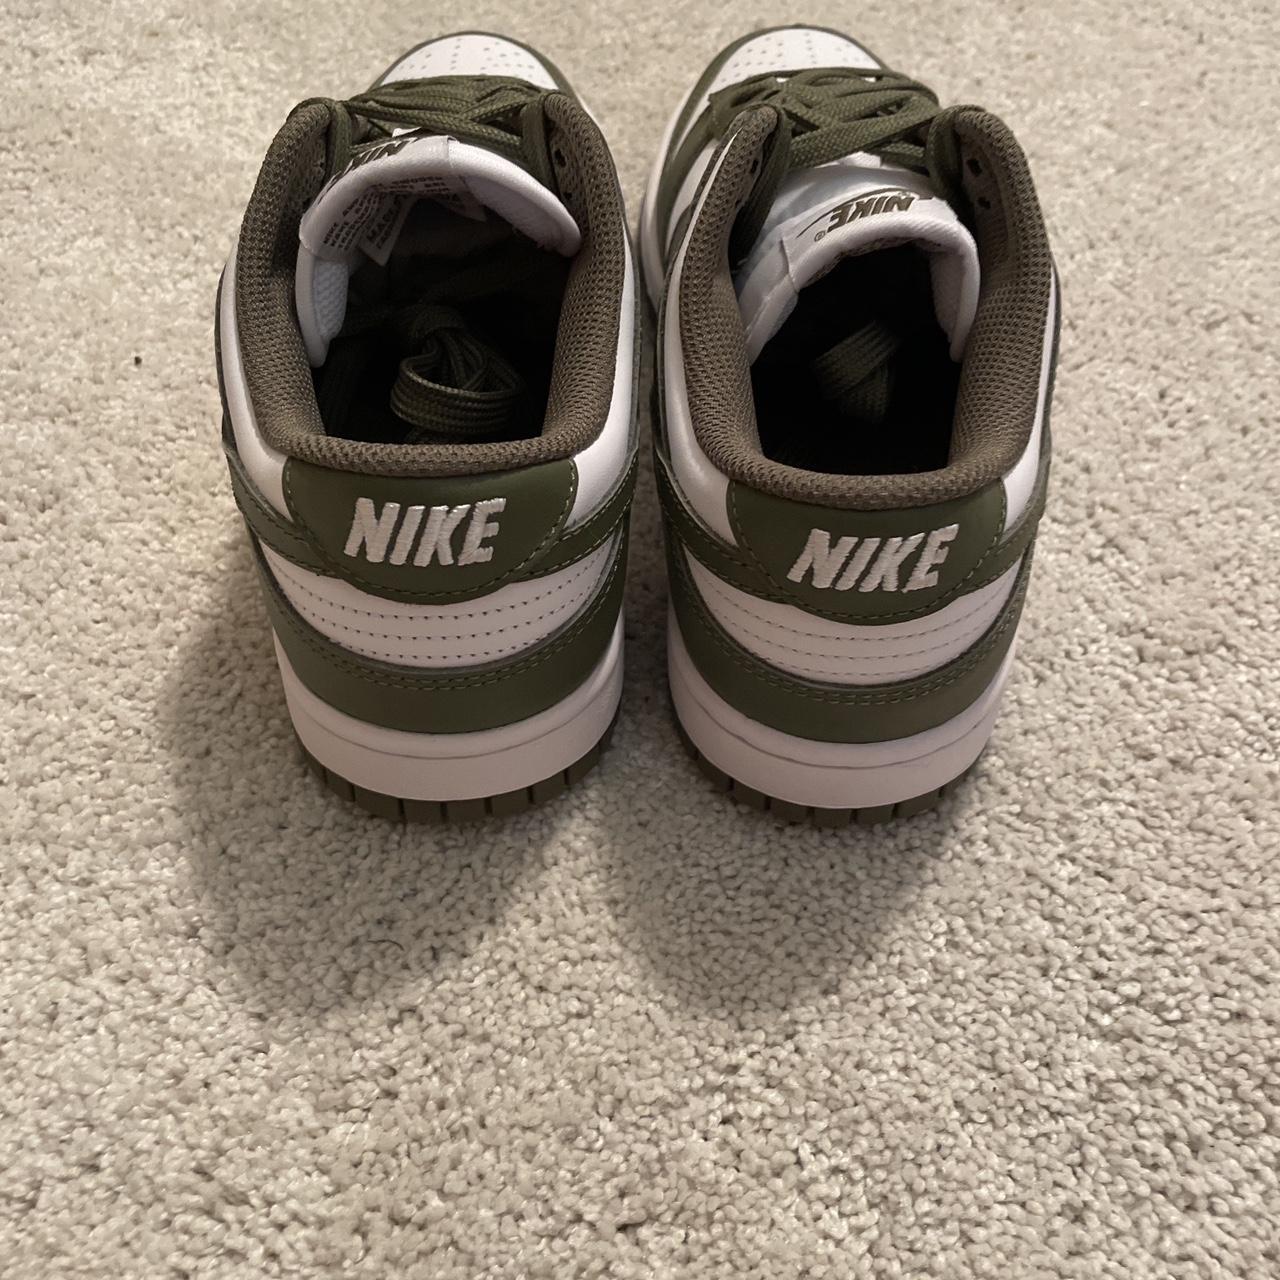 Nike Dunk Lows. Color Medium Olive. Size 7.5. Brand... - Depop